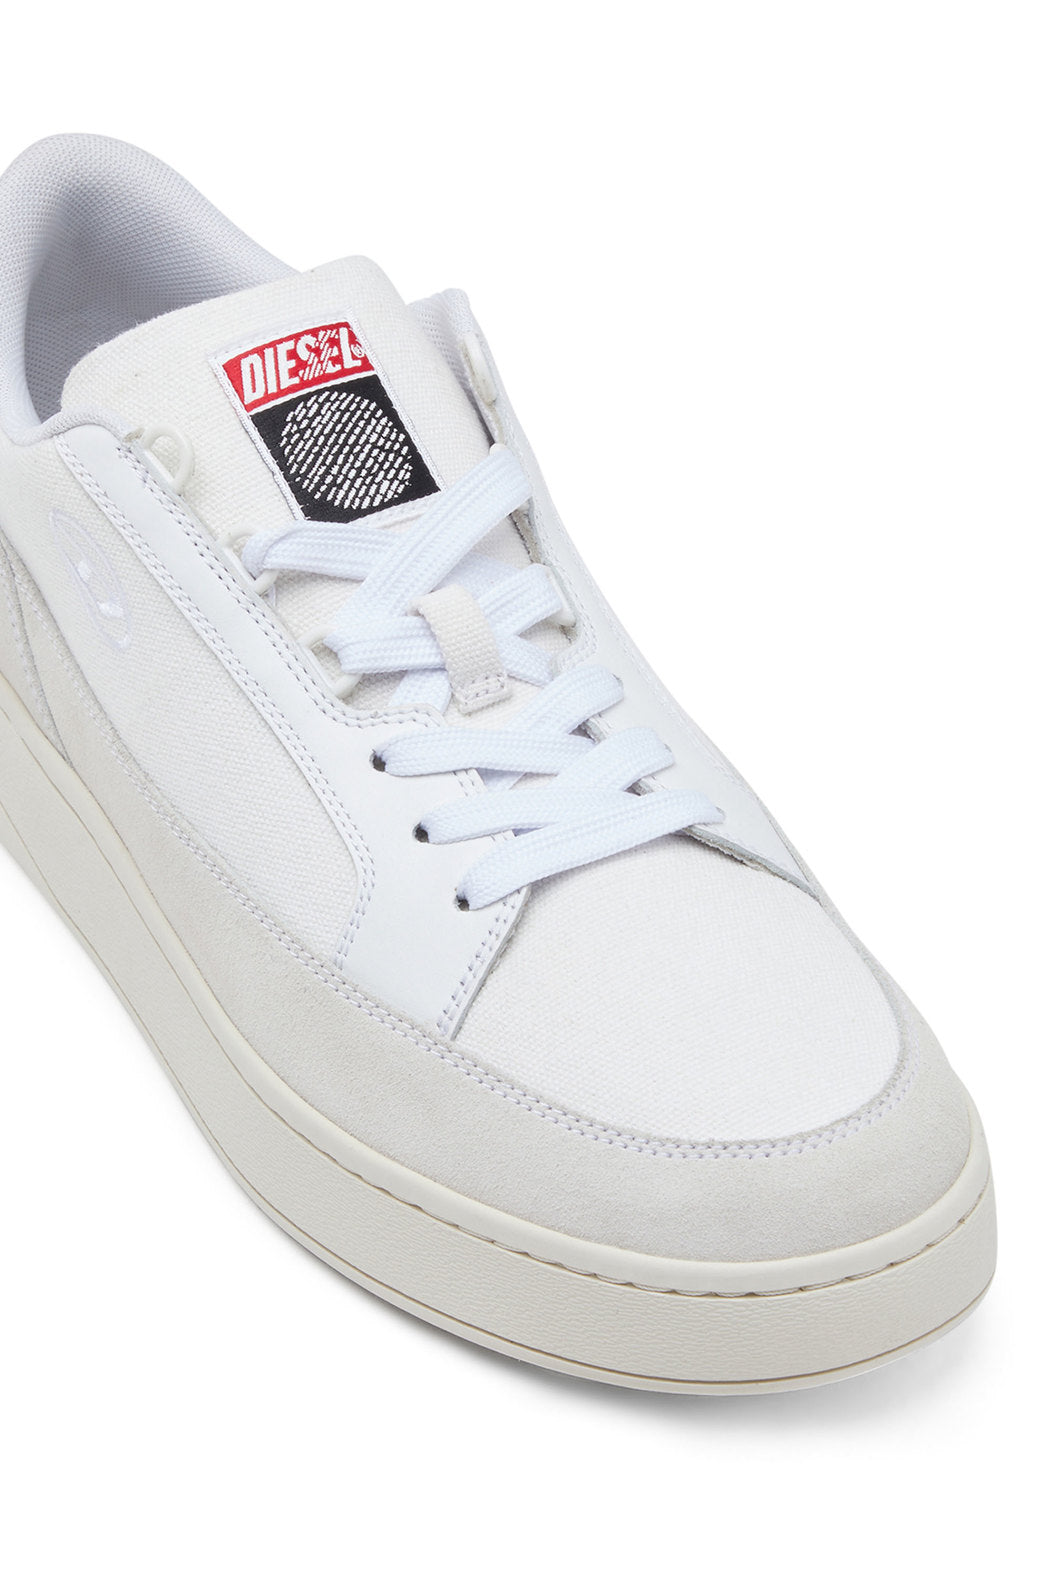 Diesel Y02963Pr049 Unisex S-Sinna Low X Sneakers White